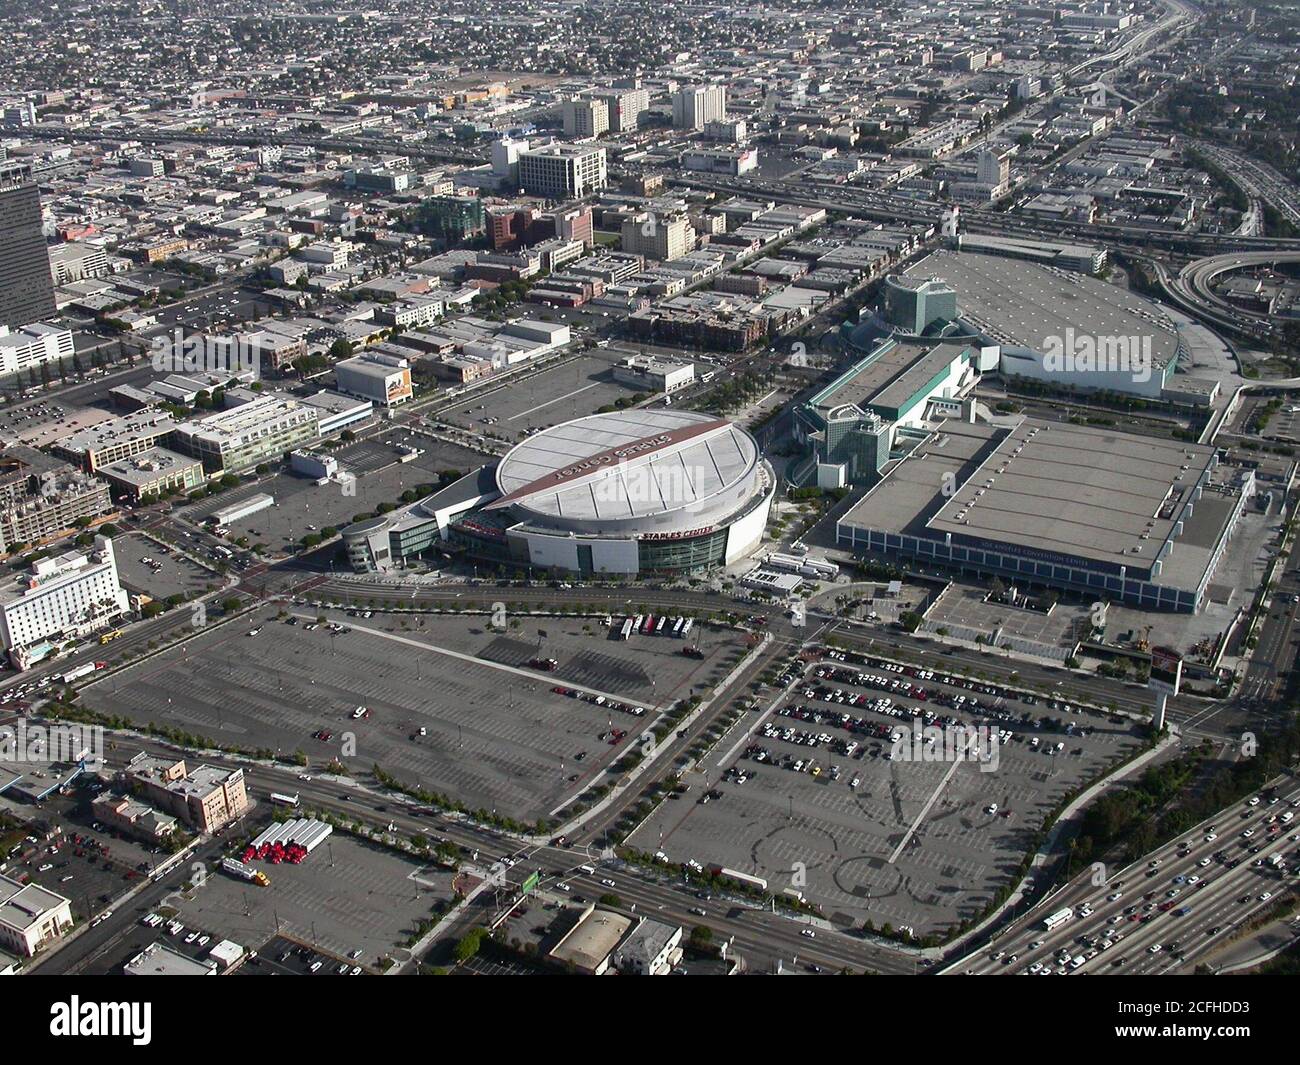 Los Angeles, Californie, États-Unis - 26 mai 2004 : vue aérienne d'archives du Staples Center et du Los Angeles Convention Center dans le centre-ville de Los Angeles. Banque D'Images